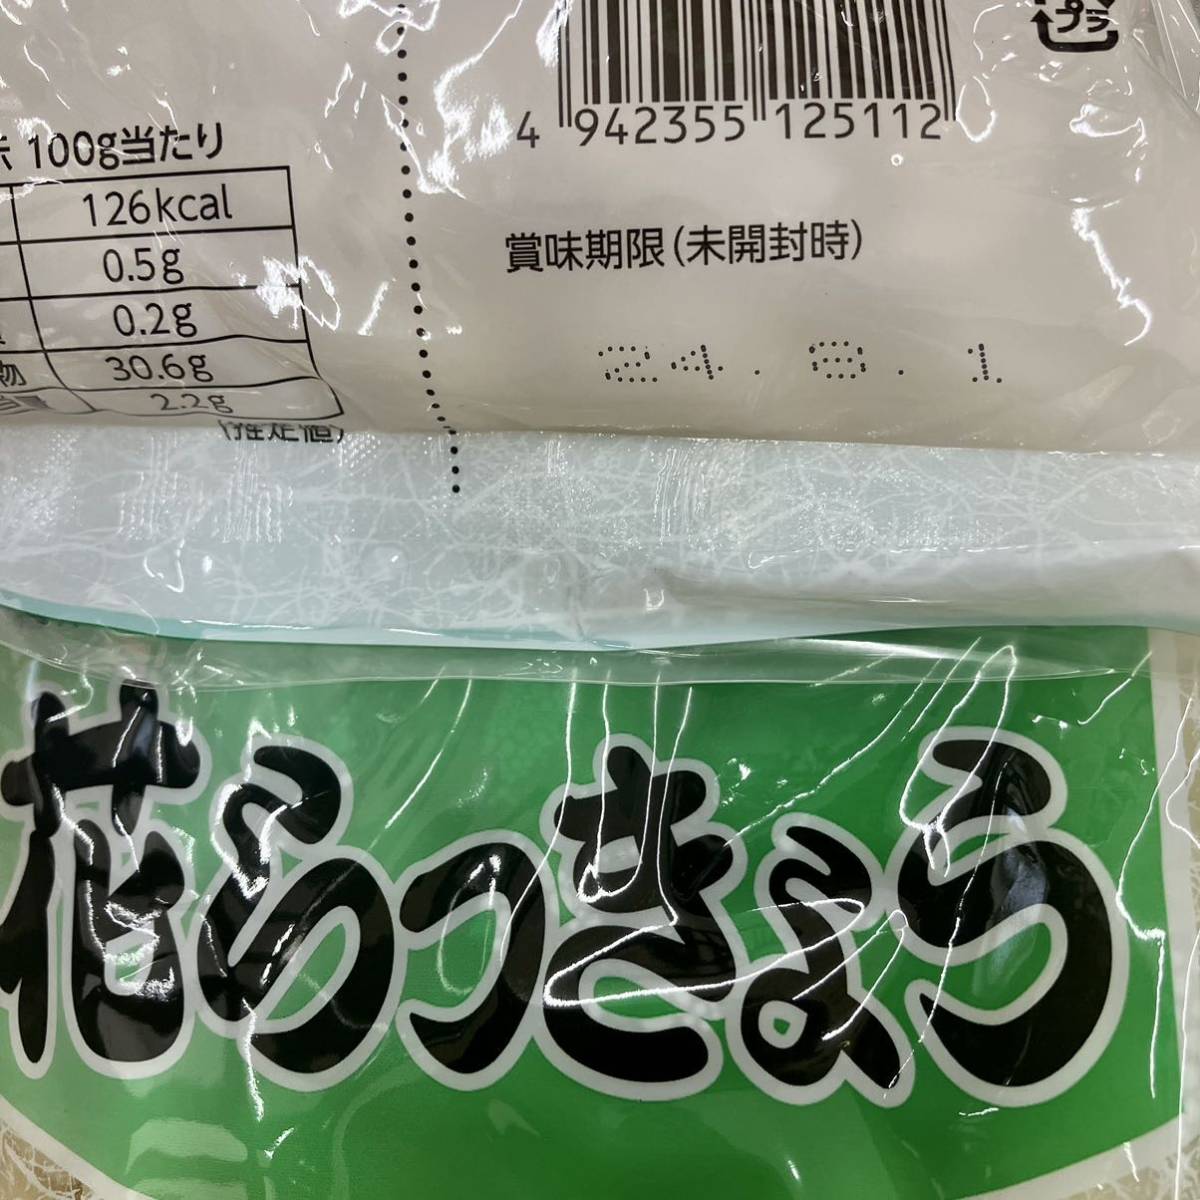  цветок rakkyou 1kg(500g×2 пакет ) солености tsukemono rakkyou . уксус .. солености tsukemono Отядзукэ карри рис палочки для еды .. присоединение класть здоровье техническое обслуживание 